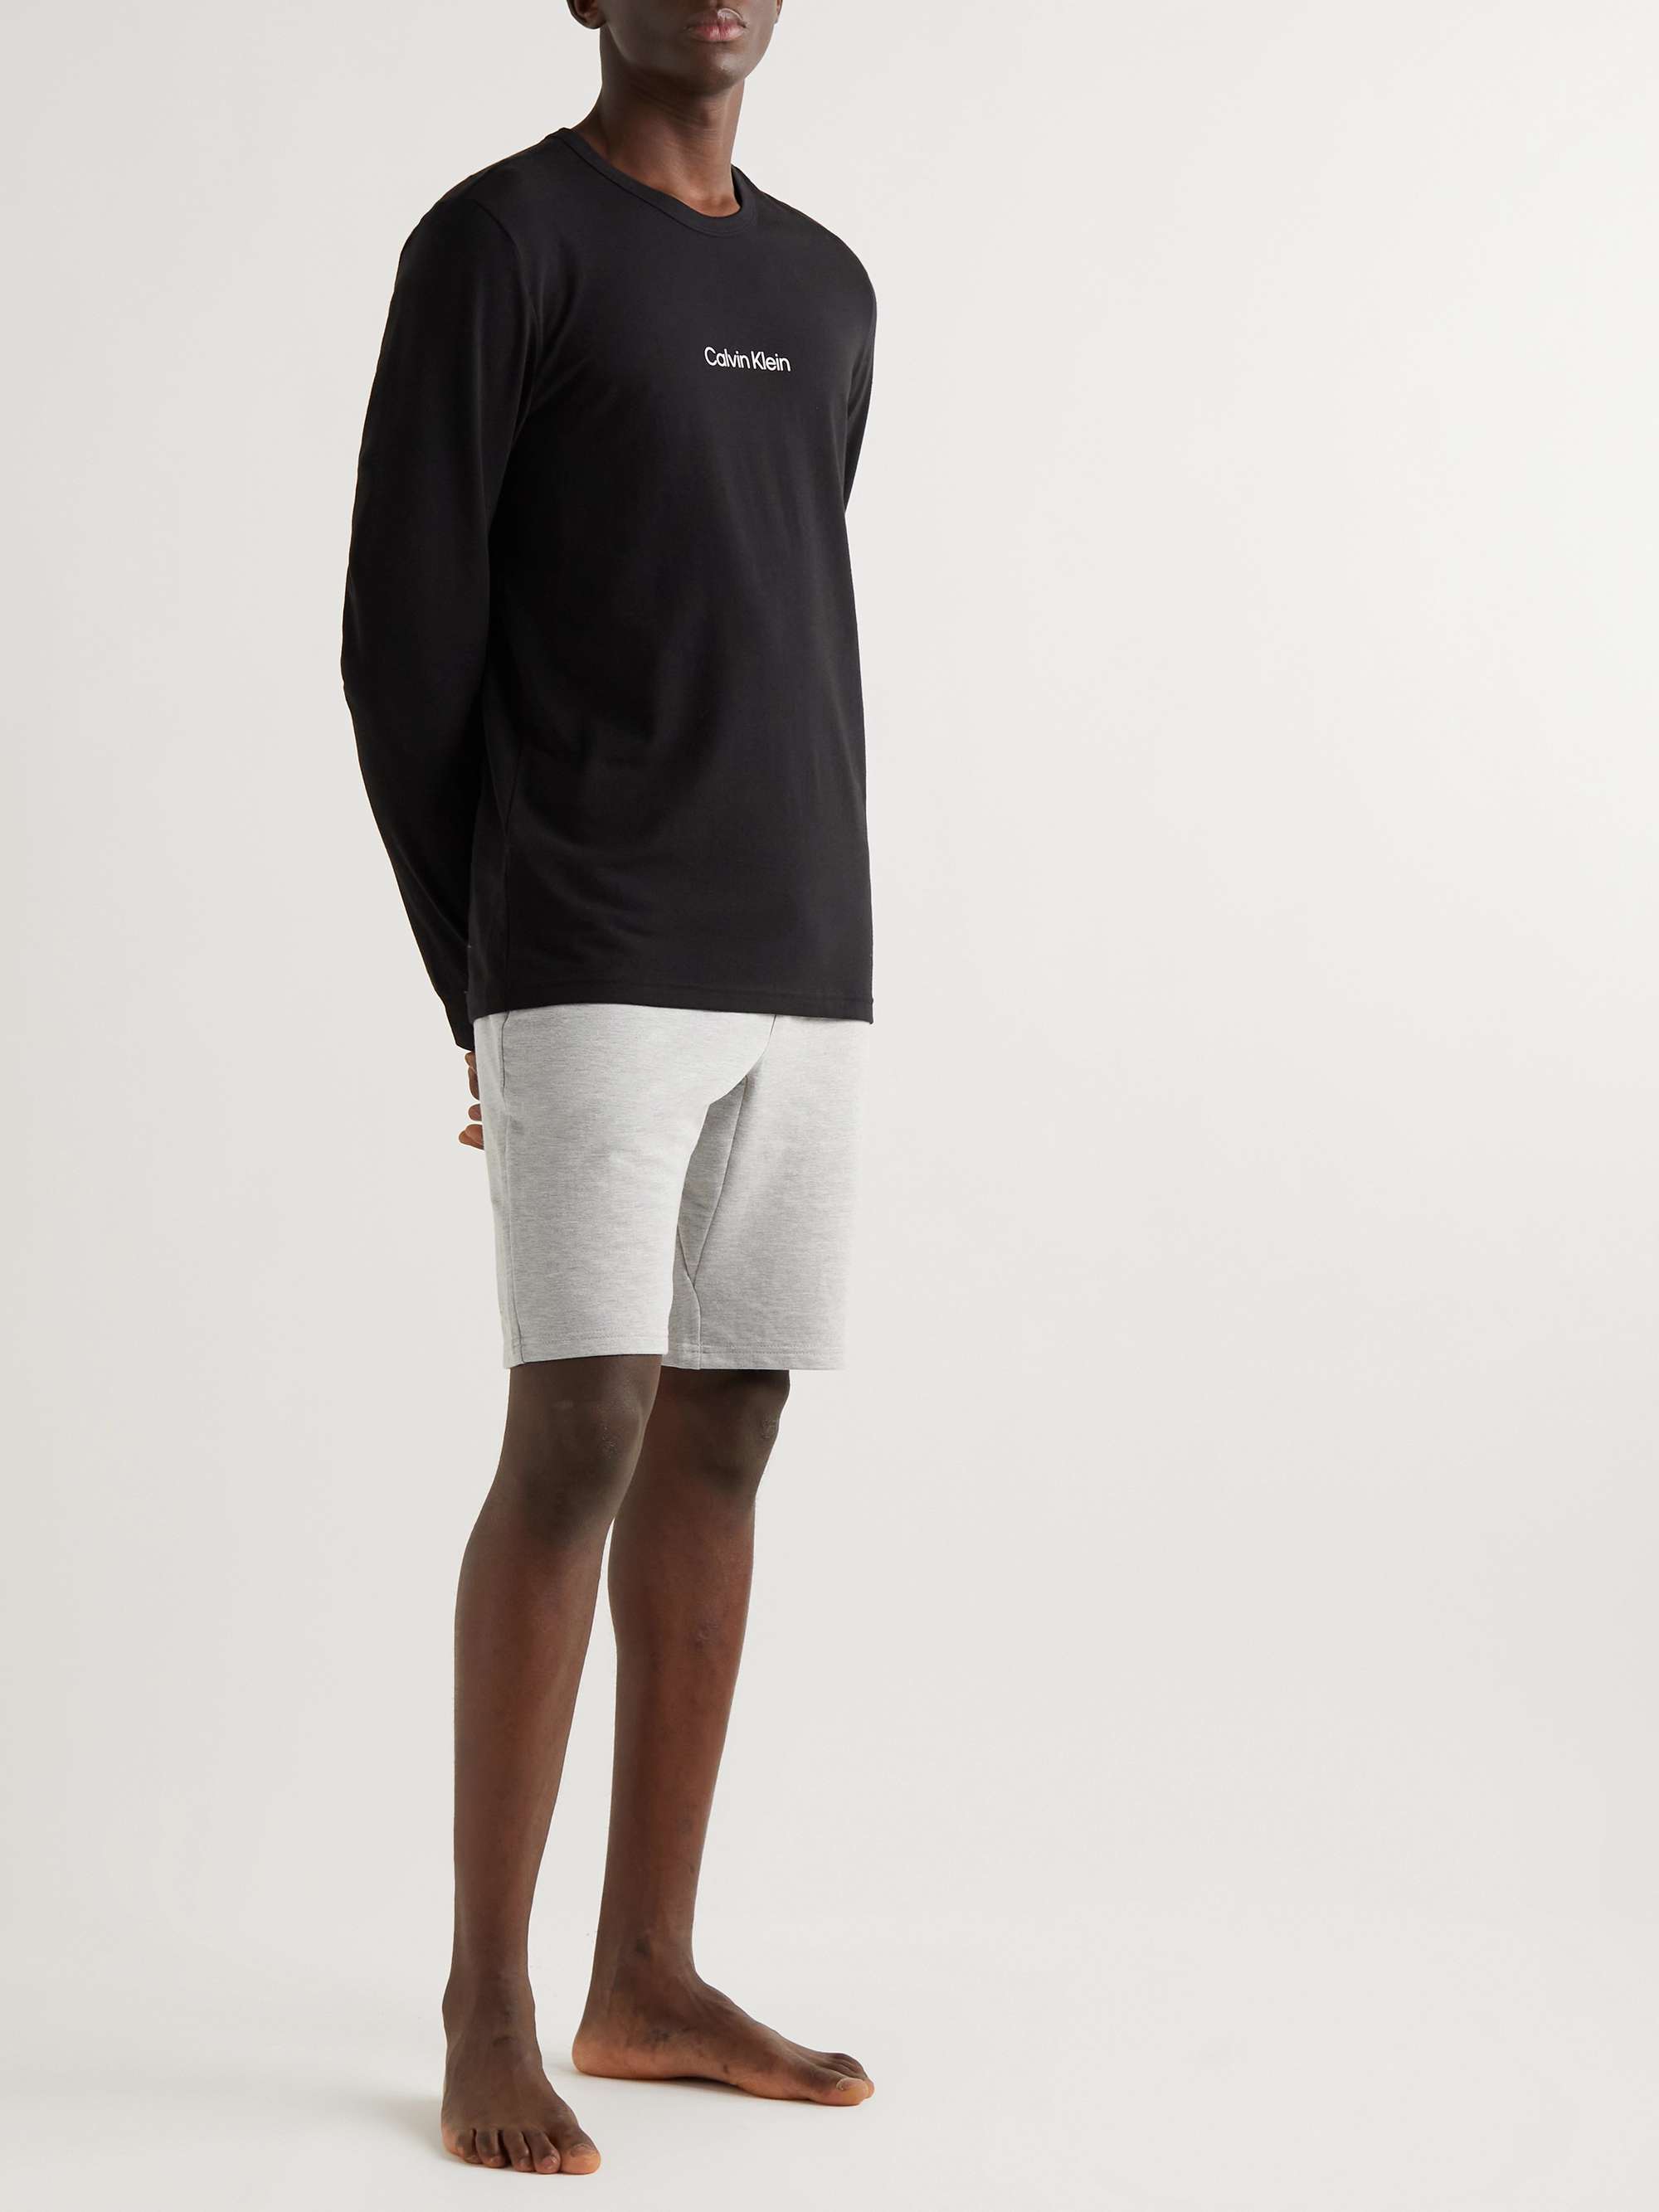 CALVIN KLEIN UNDERWEAR Logo-Print Cotton-Blend Jersey T-Shirt